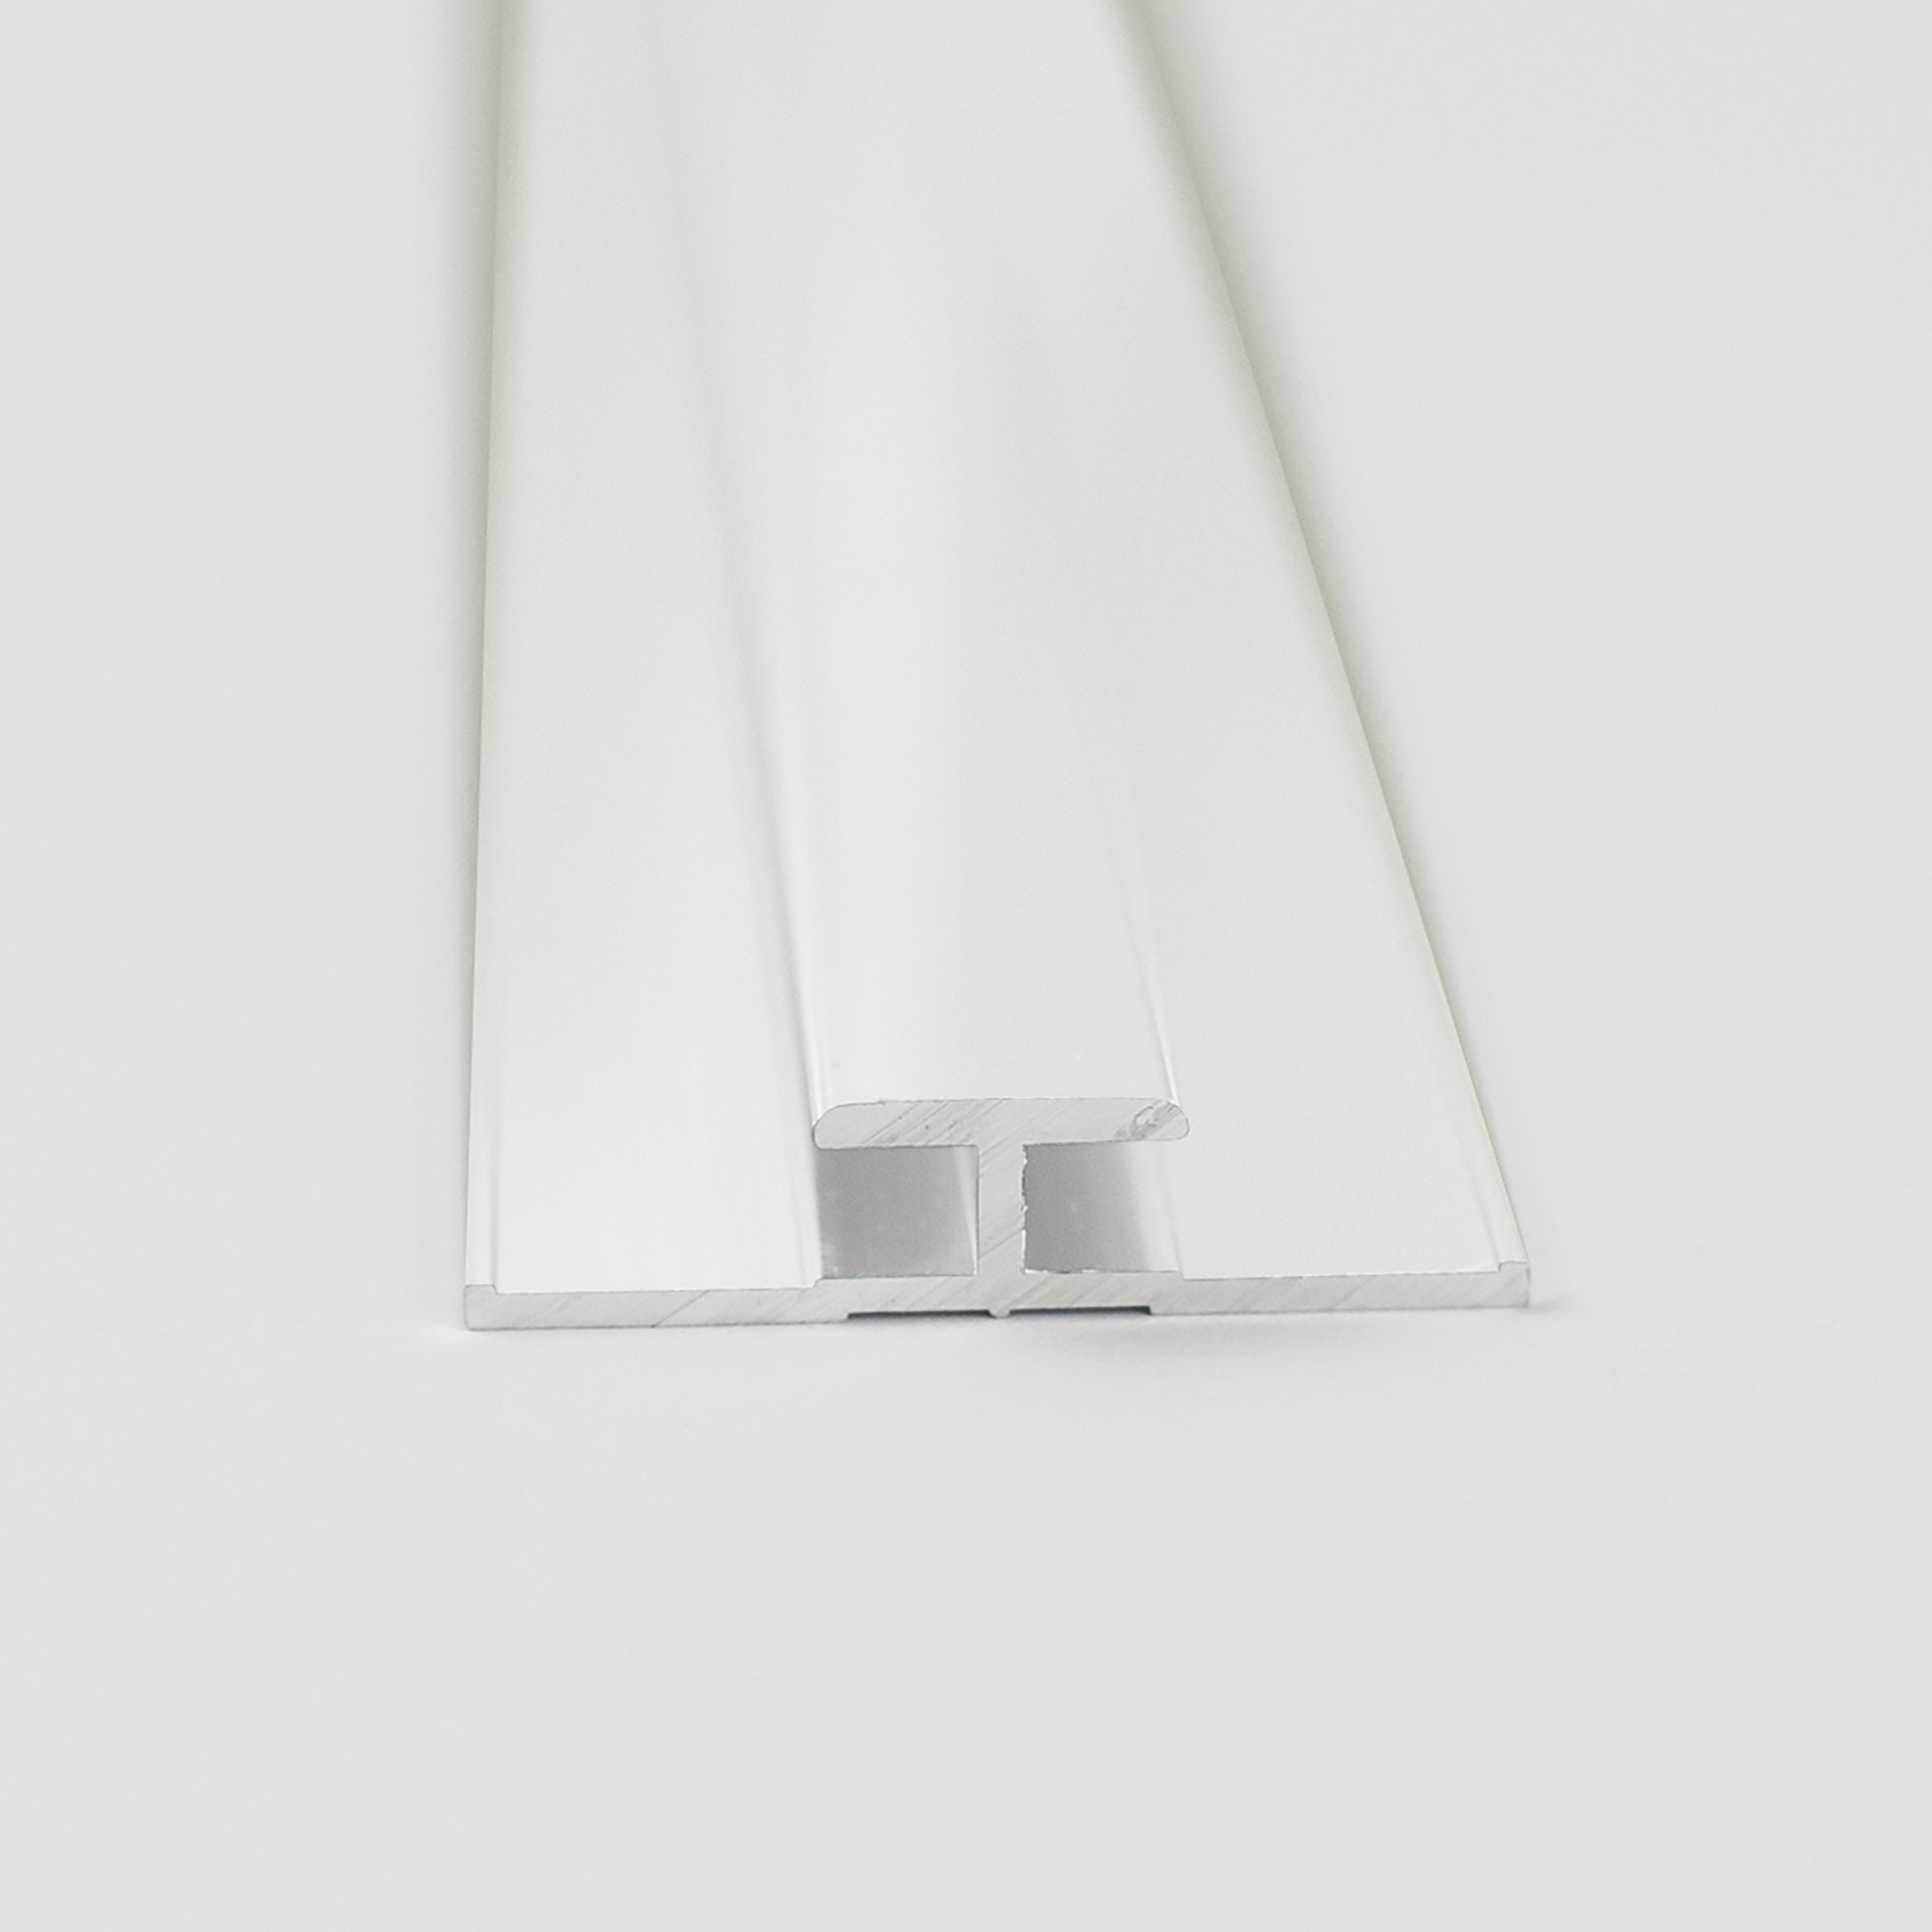 Verbindungsprofil für Rückwandplatten, weiß, 2100 mm + product picture